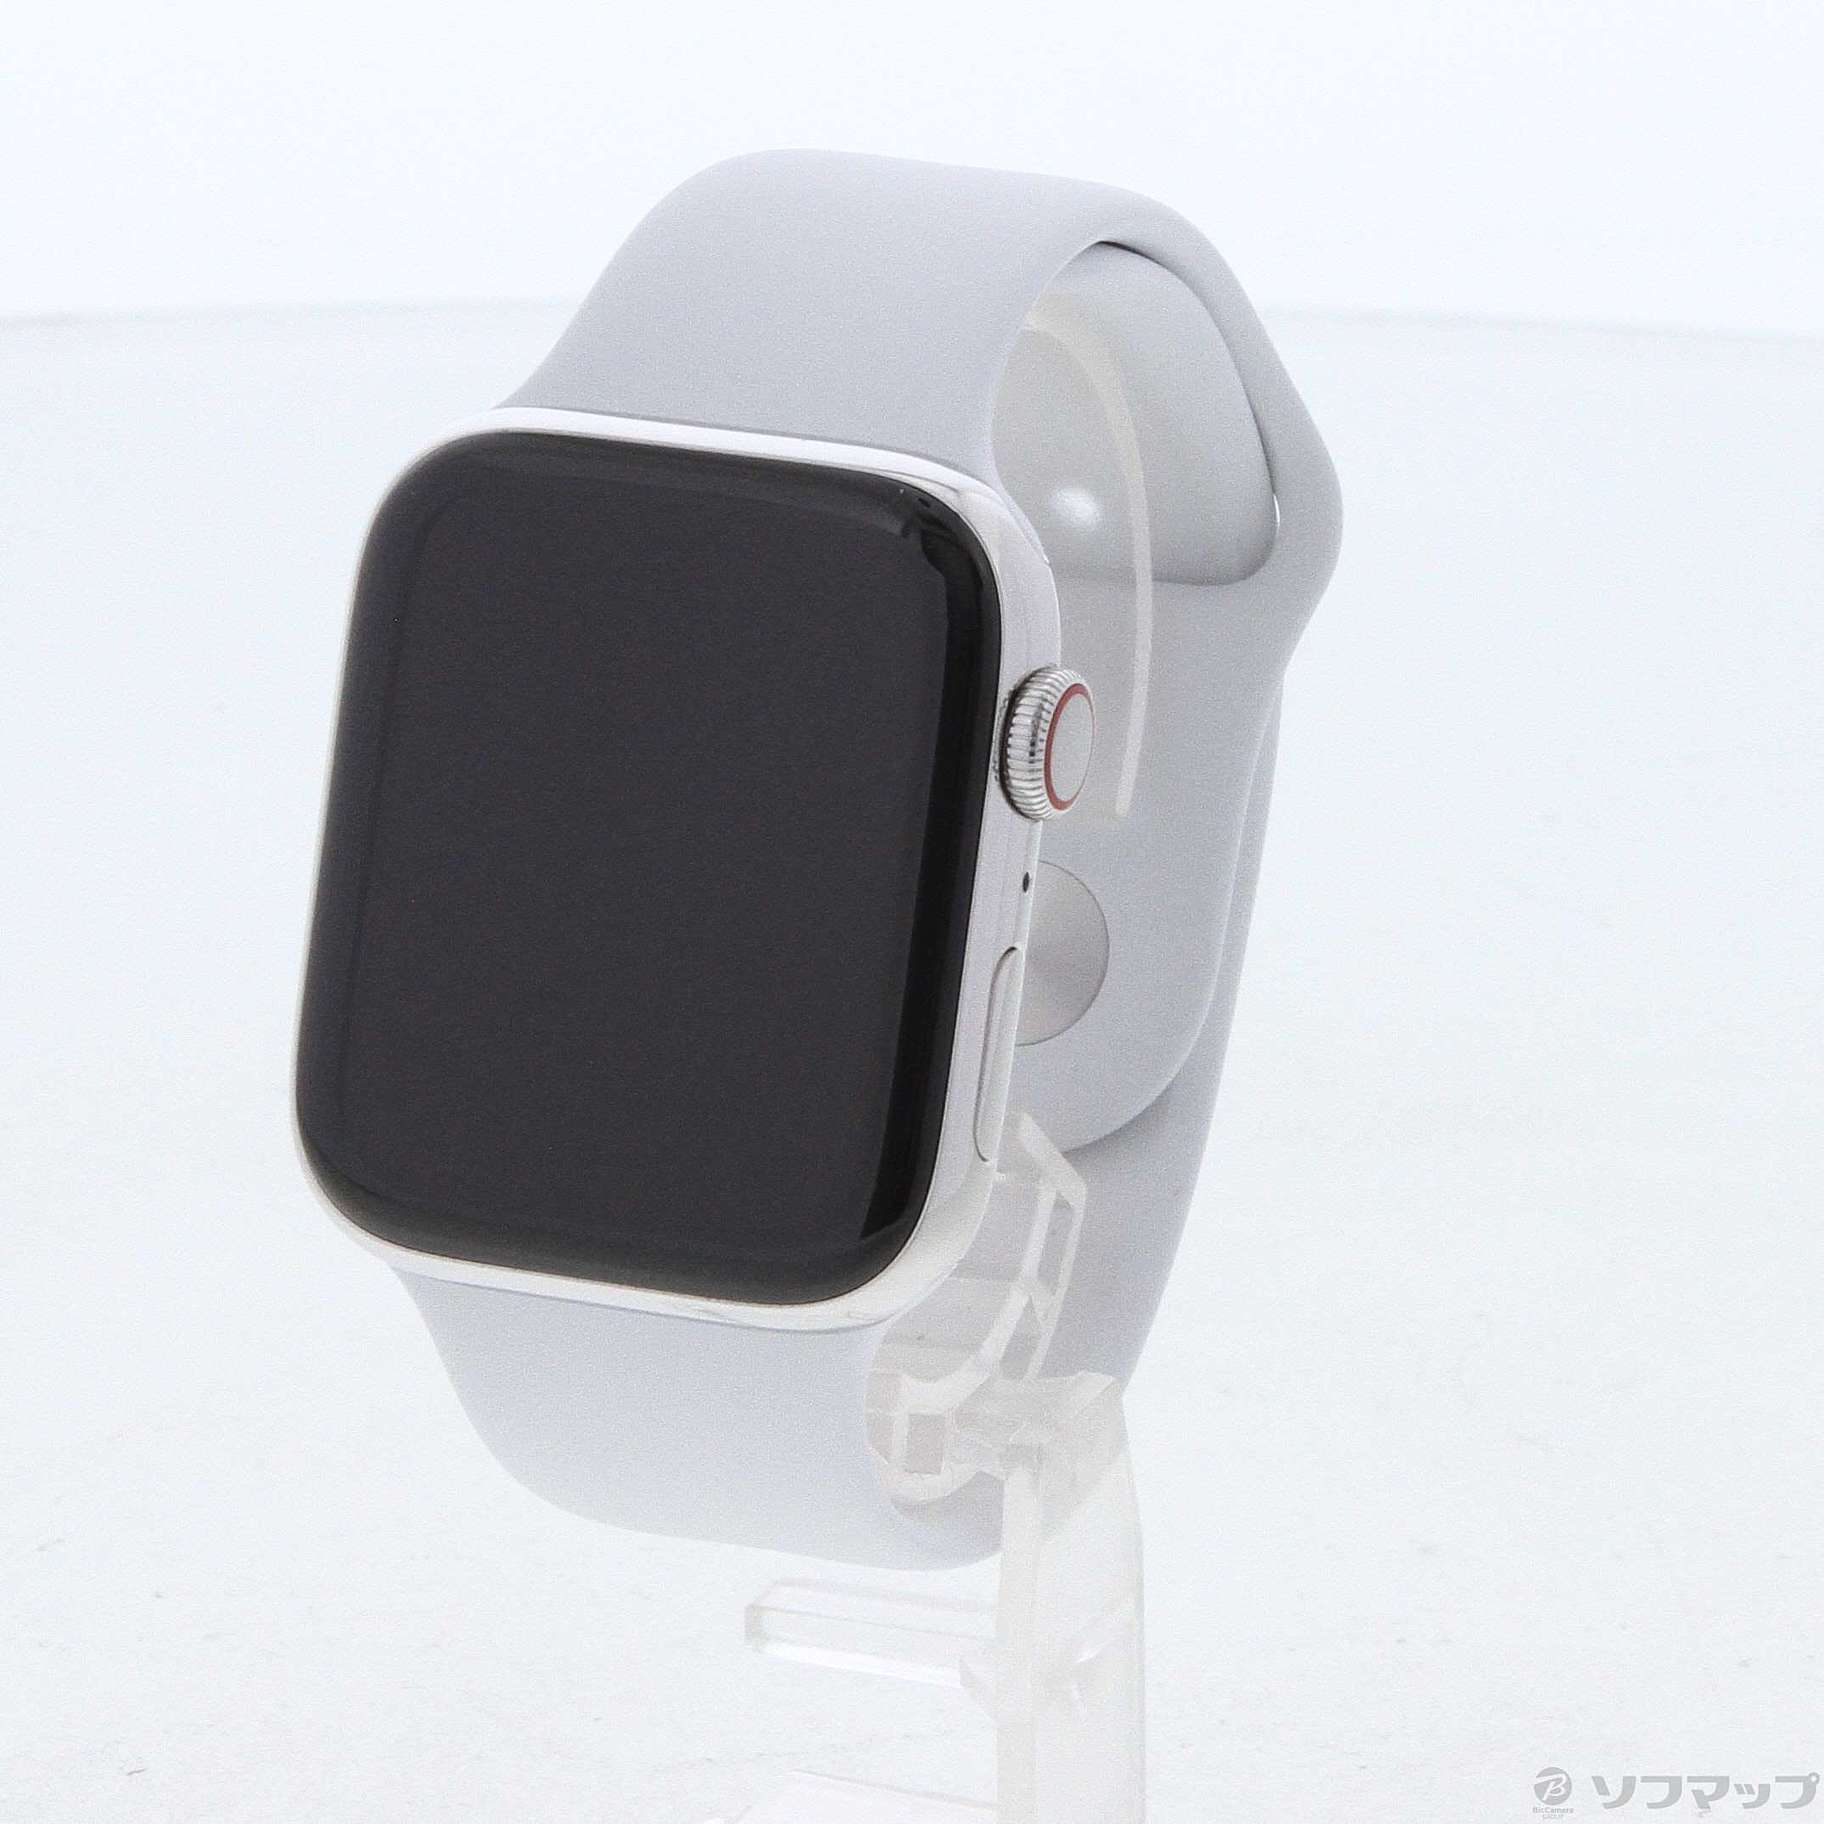 Apple Watch 4 GPS + cellular モデル 44mm